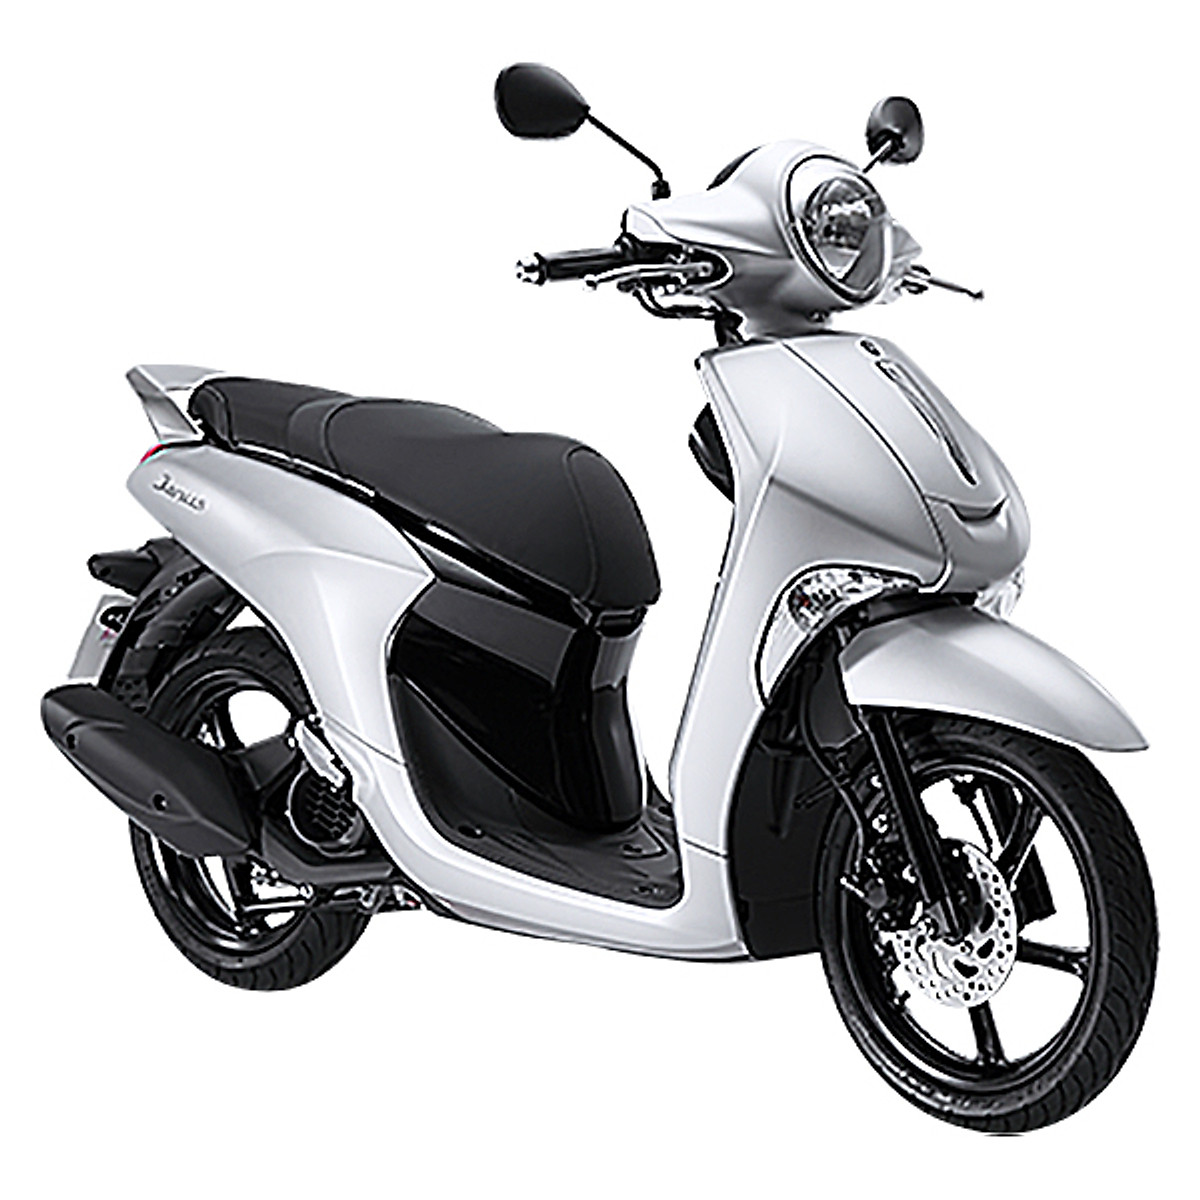 Giá xăng tăng liên tiếp Yamaha Janus  lựa chọn giúp tối ưu chi phí xăng  xe mỗi tháng